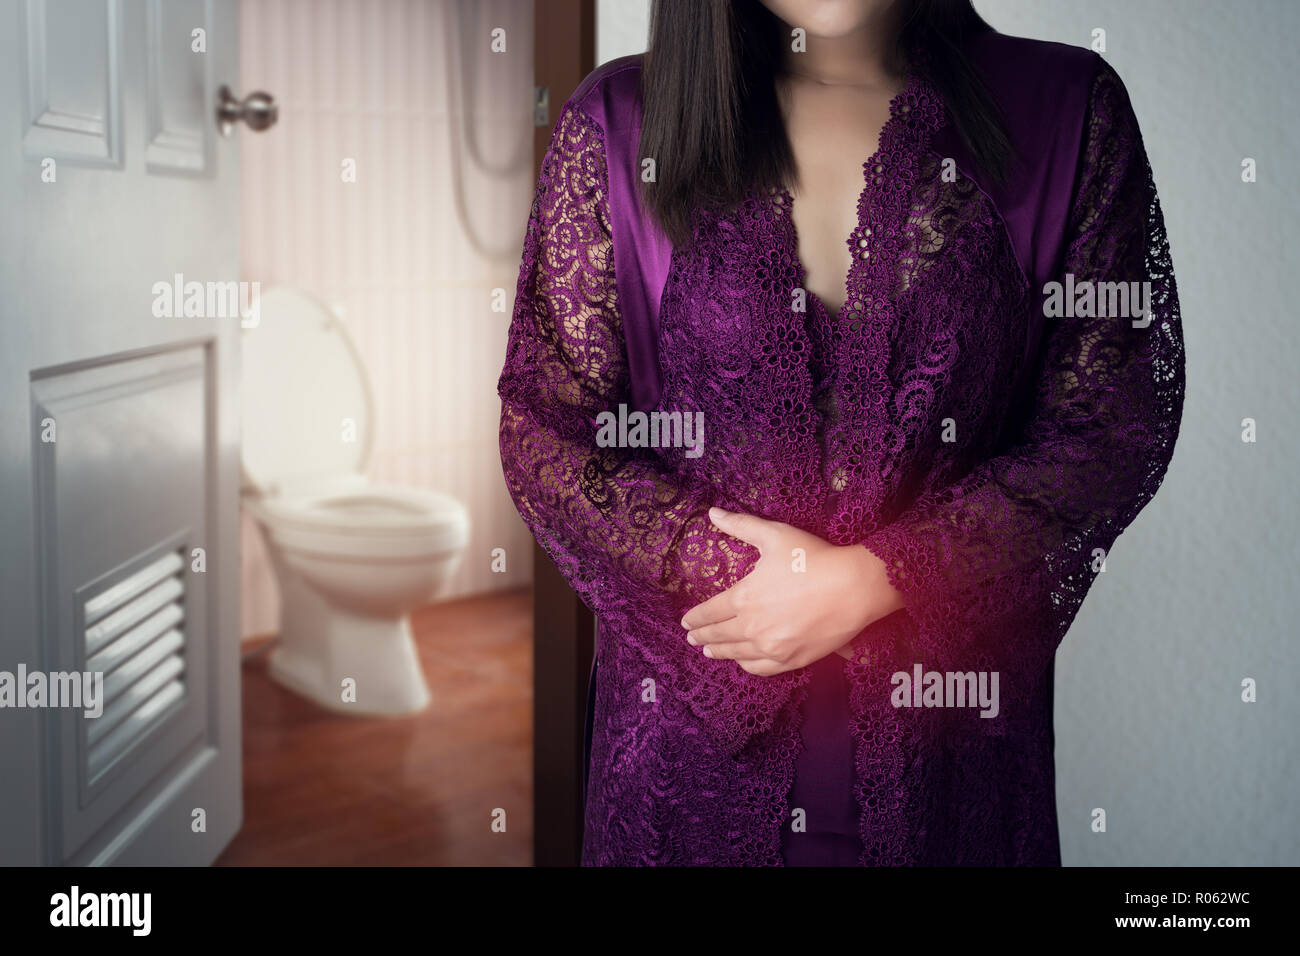 La mujer de túnica de raso púrpura despertarse para ir al baño. Asia, la gente de dolor de estómago dolor de estómago causas de la menstruación. Vidas de stock -